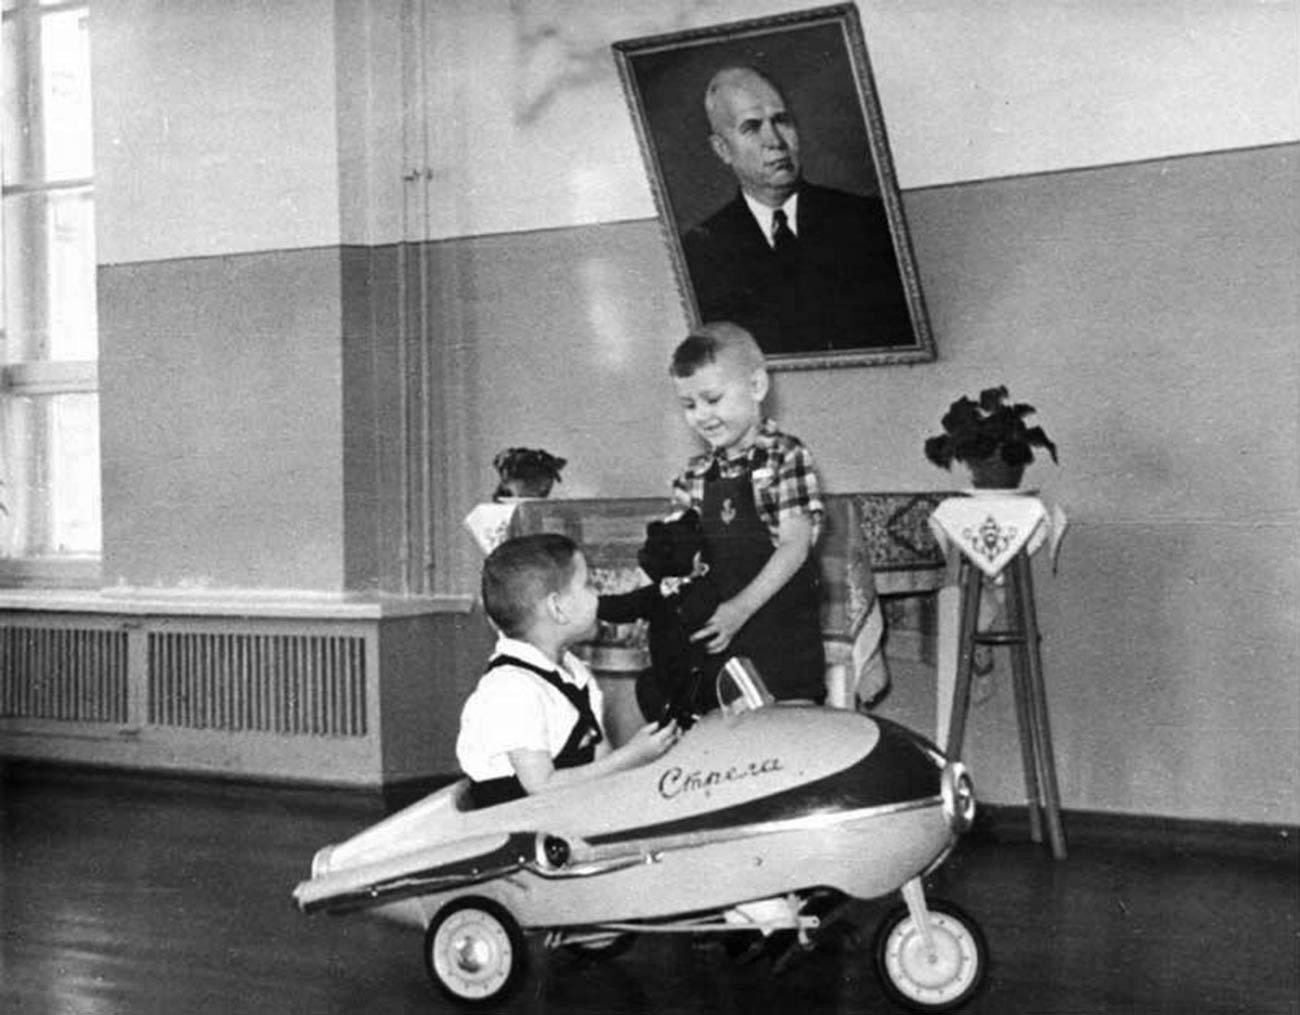 Crianças com carrinho “Strelá” (“Flecha”), 1962.